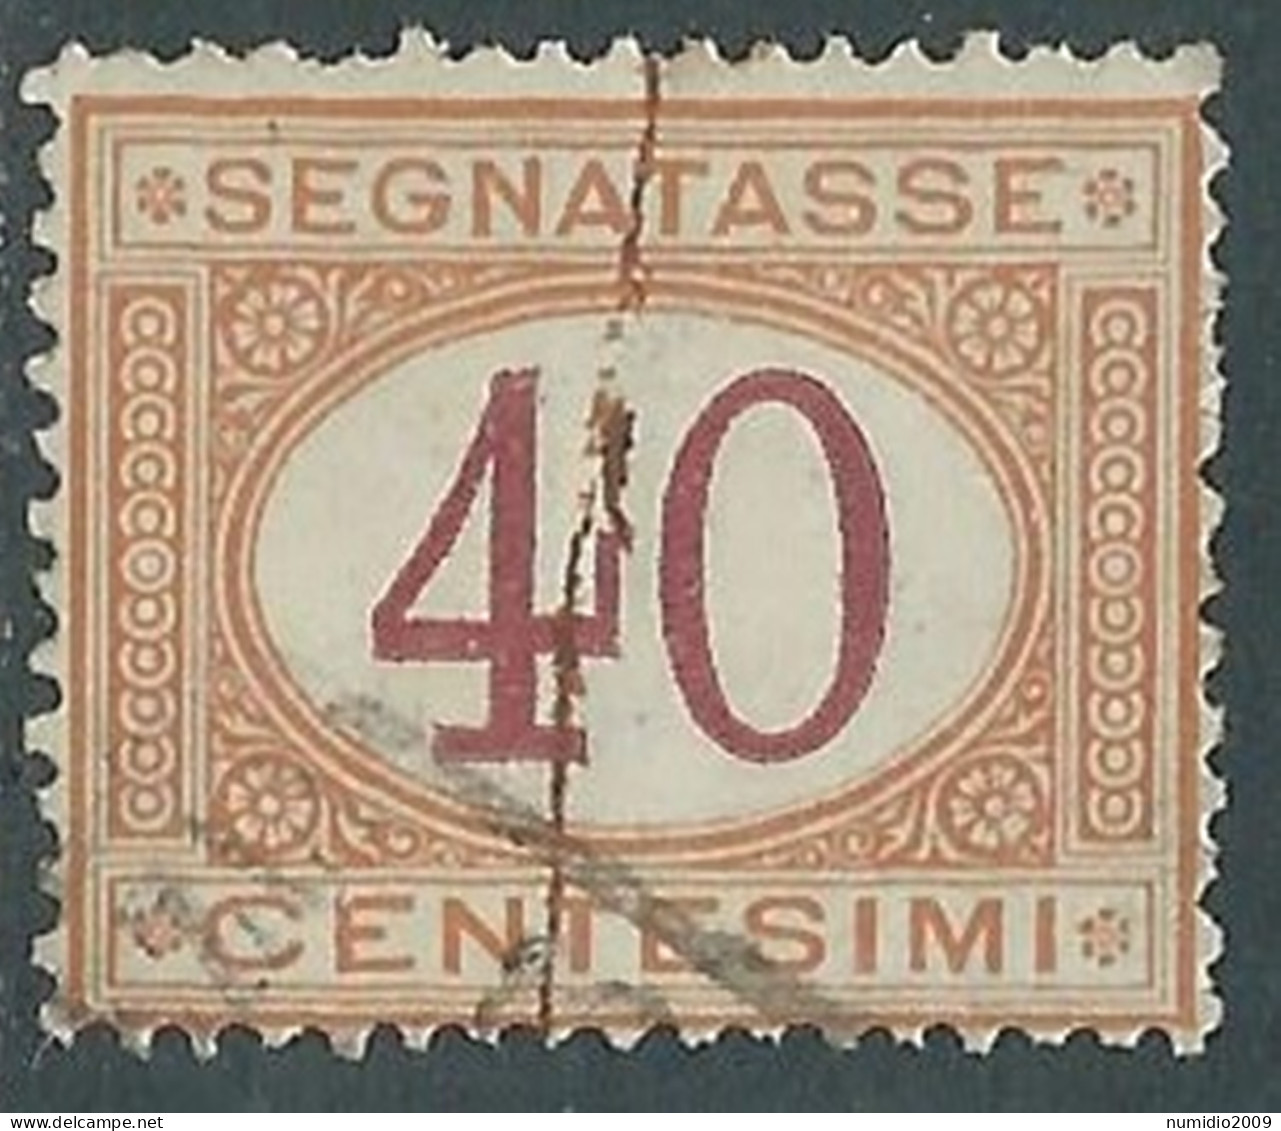 1890-94 REGNO SEGNATASSE USATO 40 CENT VARIETà RIGA COLORE - RC33 - Postage Due